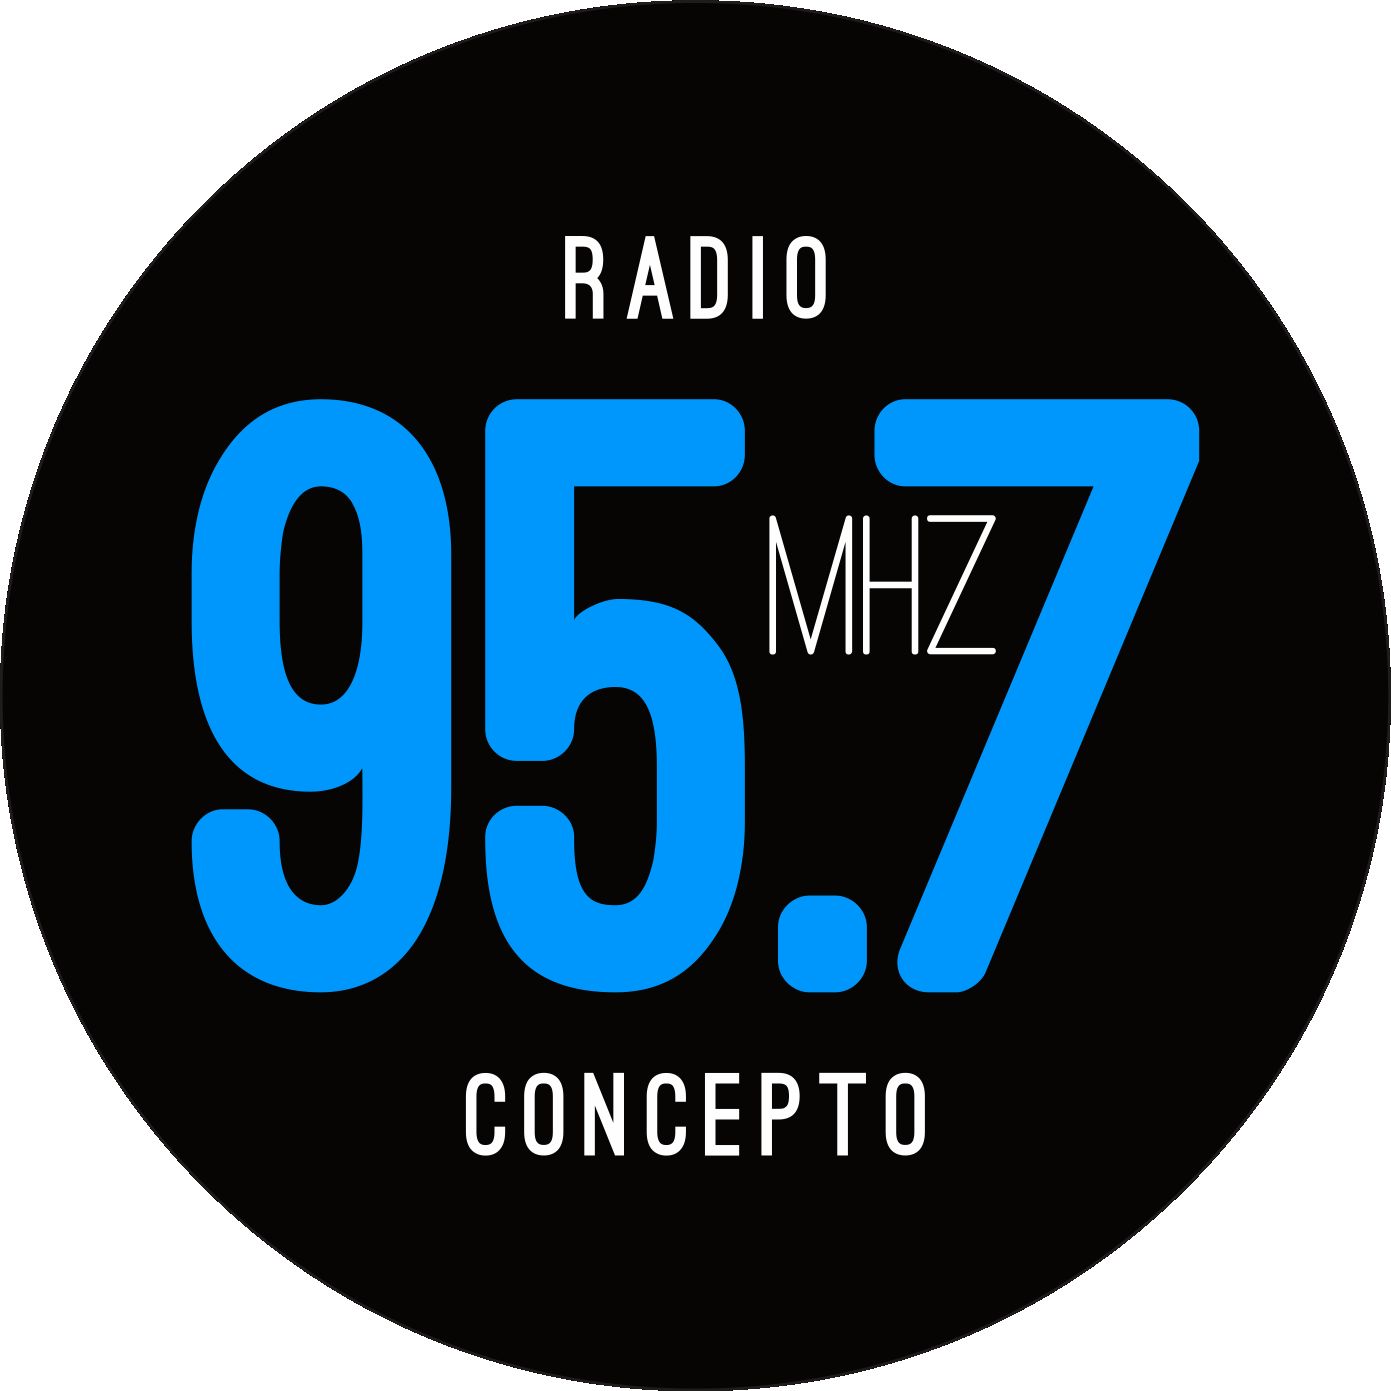 74971_FM 95.7 Un Concepto de Radio.png